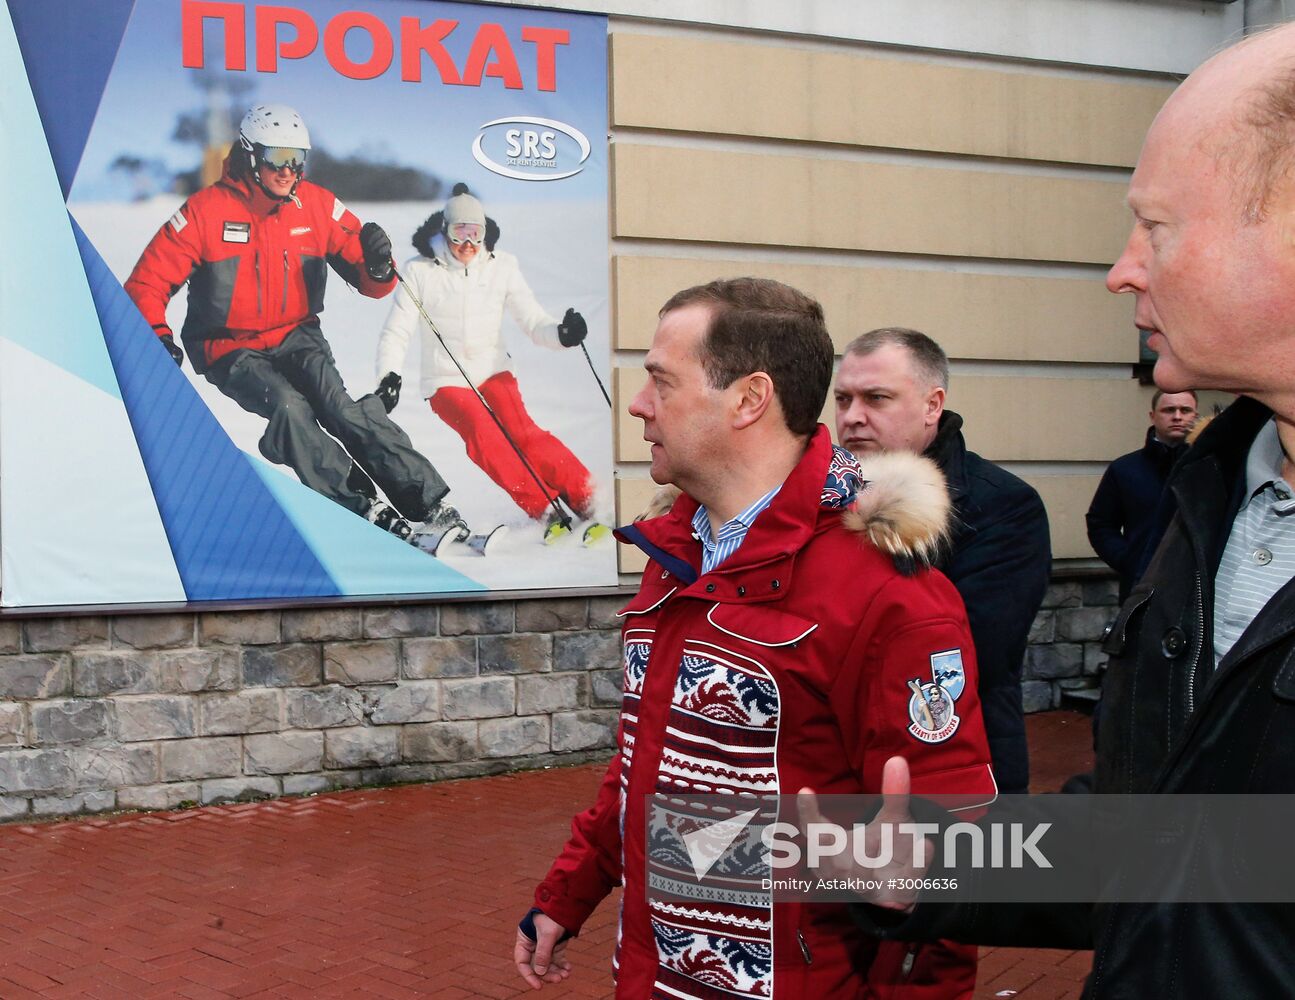 Russian Prime Minister Dmitry Medvedev examines Gorky Gorod ski resort in Sochi